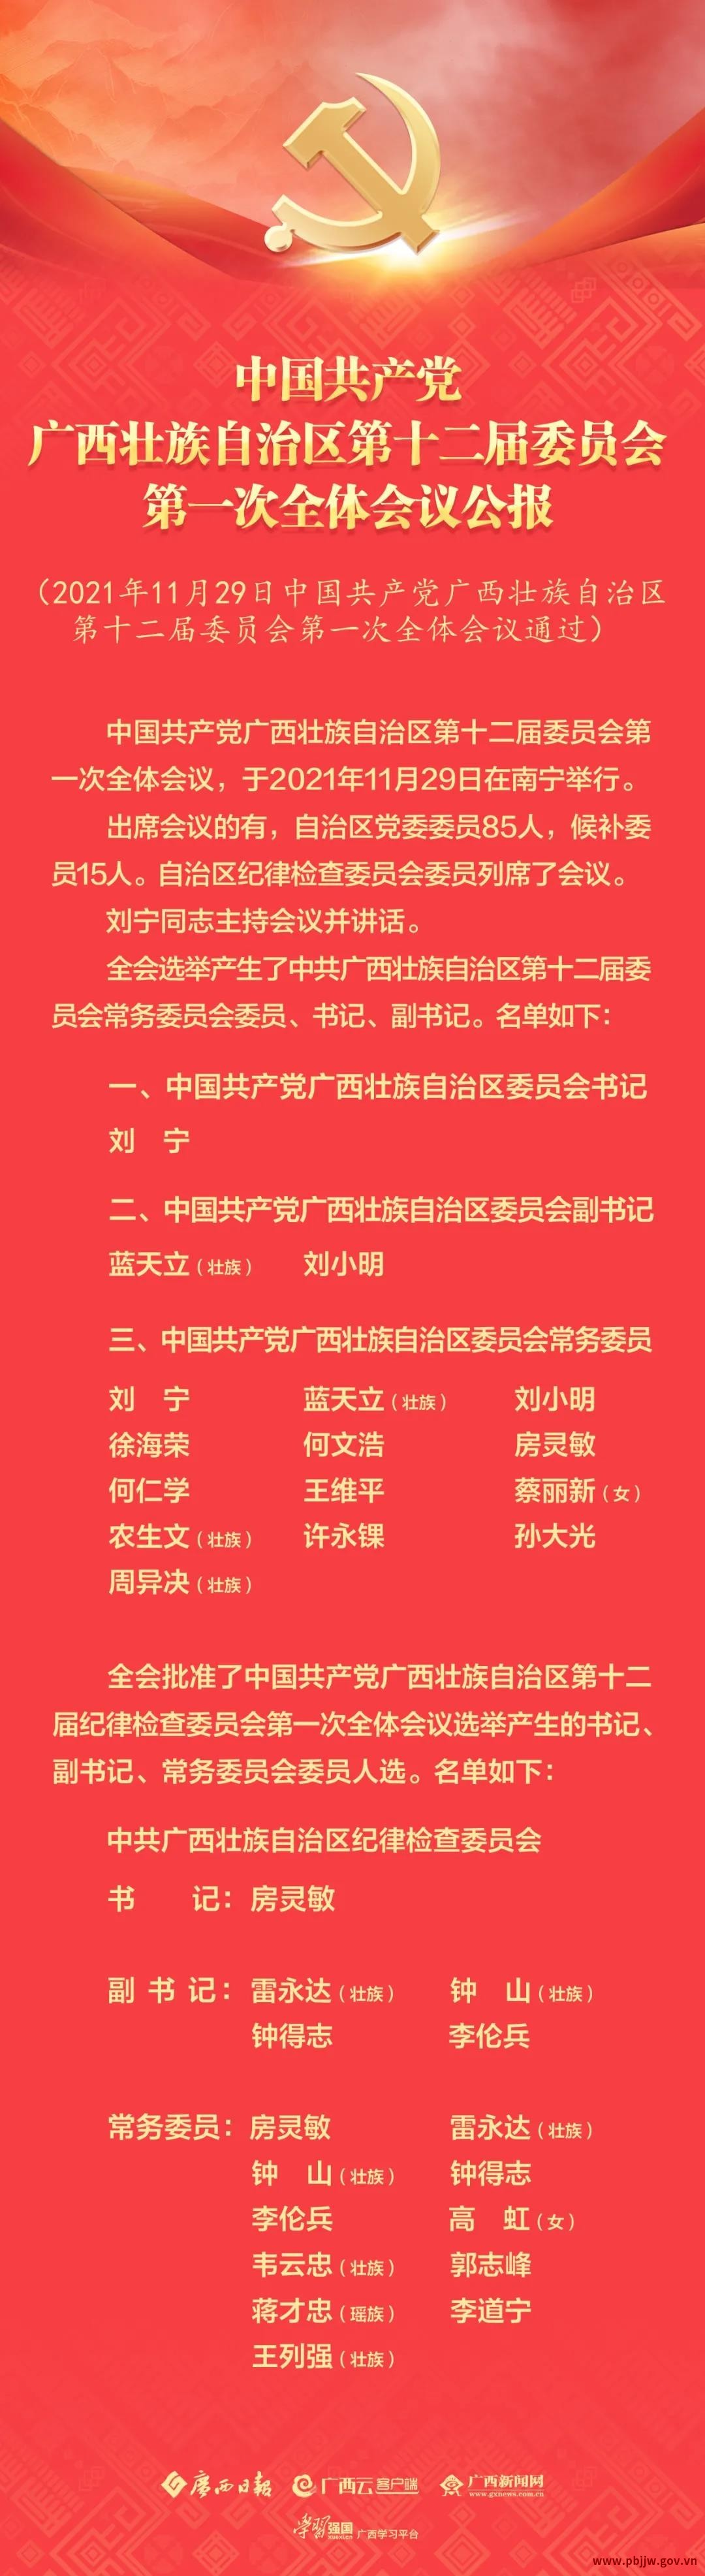 中国共产党广西壮族自治区第十二届委员会第一次全体会议公报